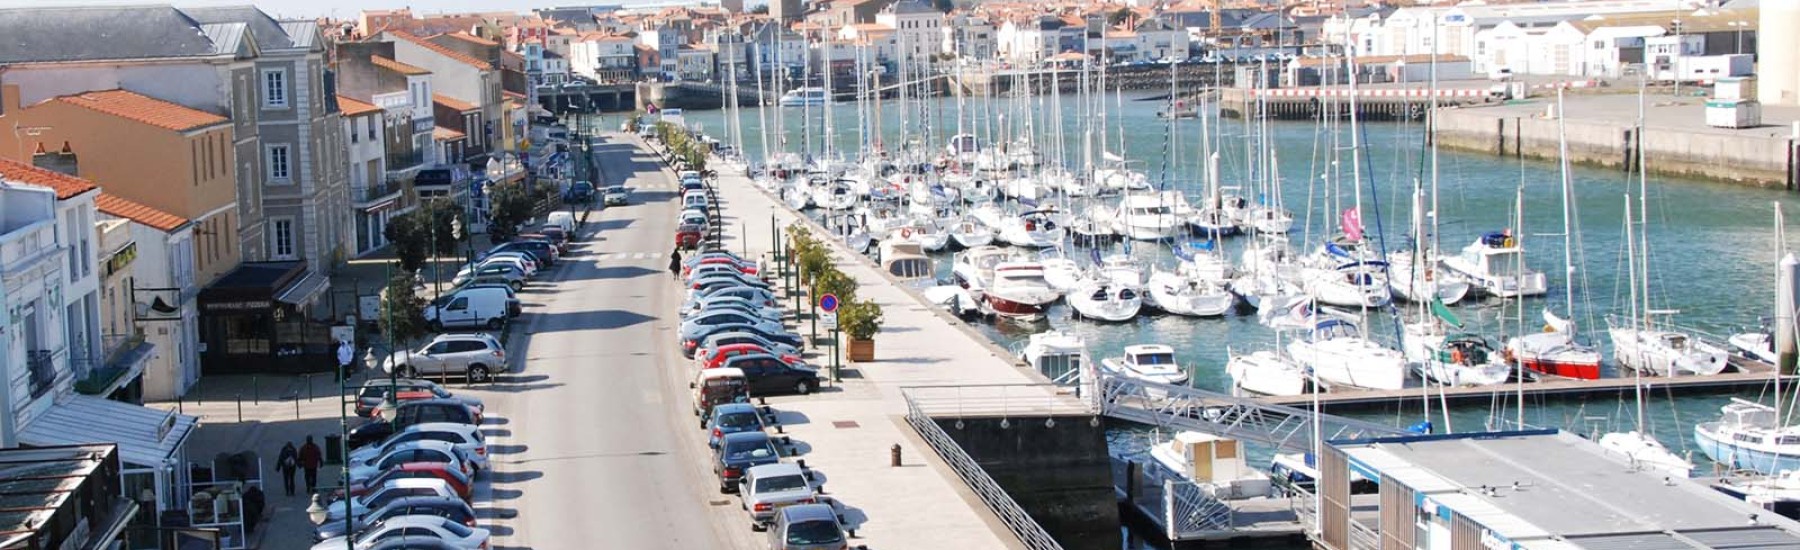 Port quai garnier - plaisance Sables d'Olonne